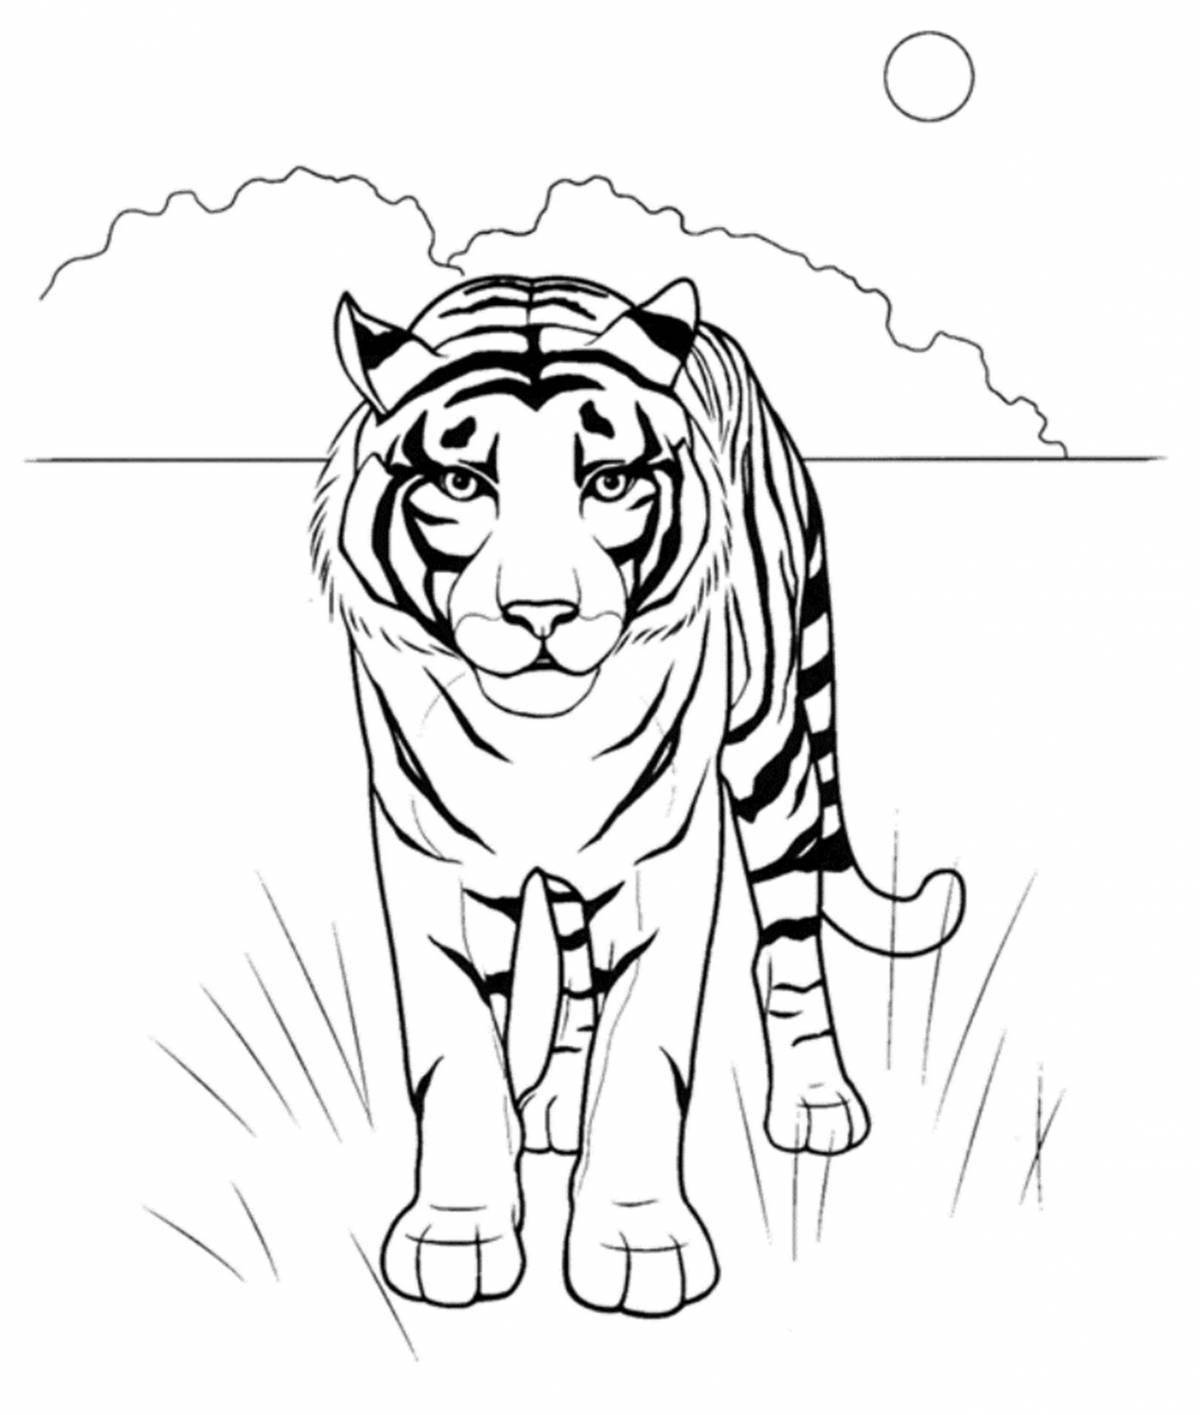 Tiger drawing #2